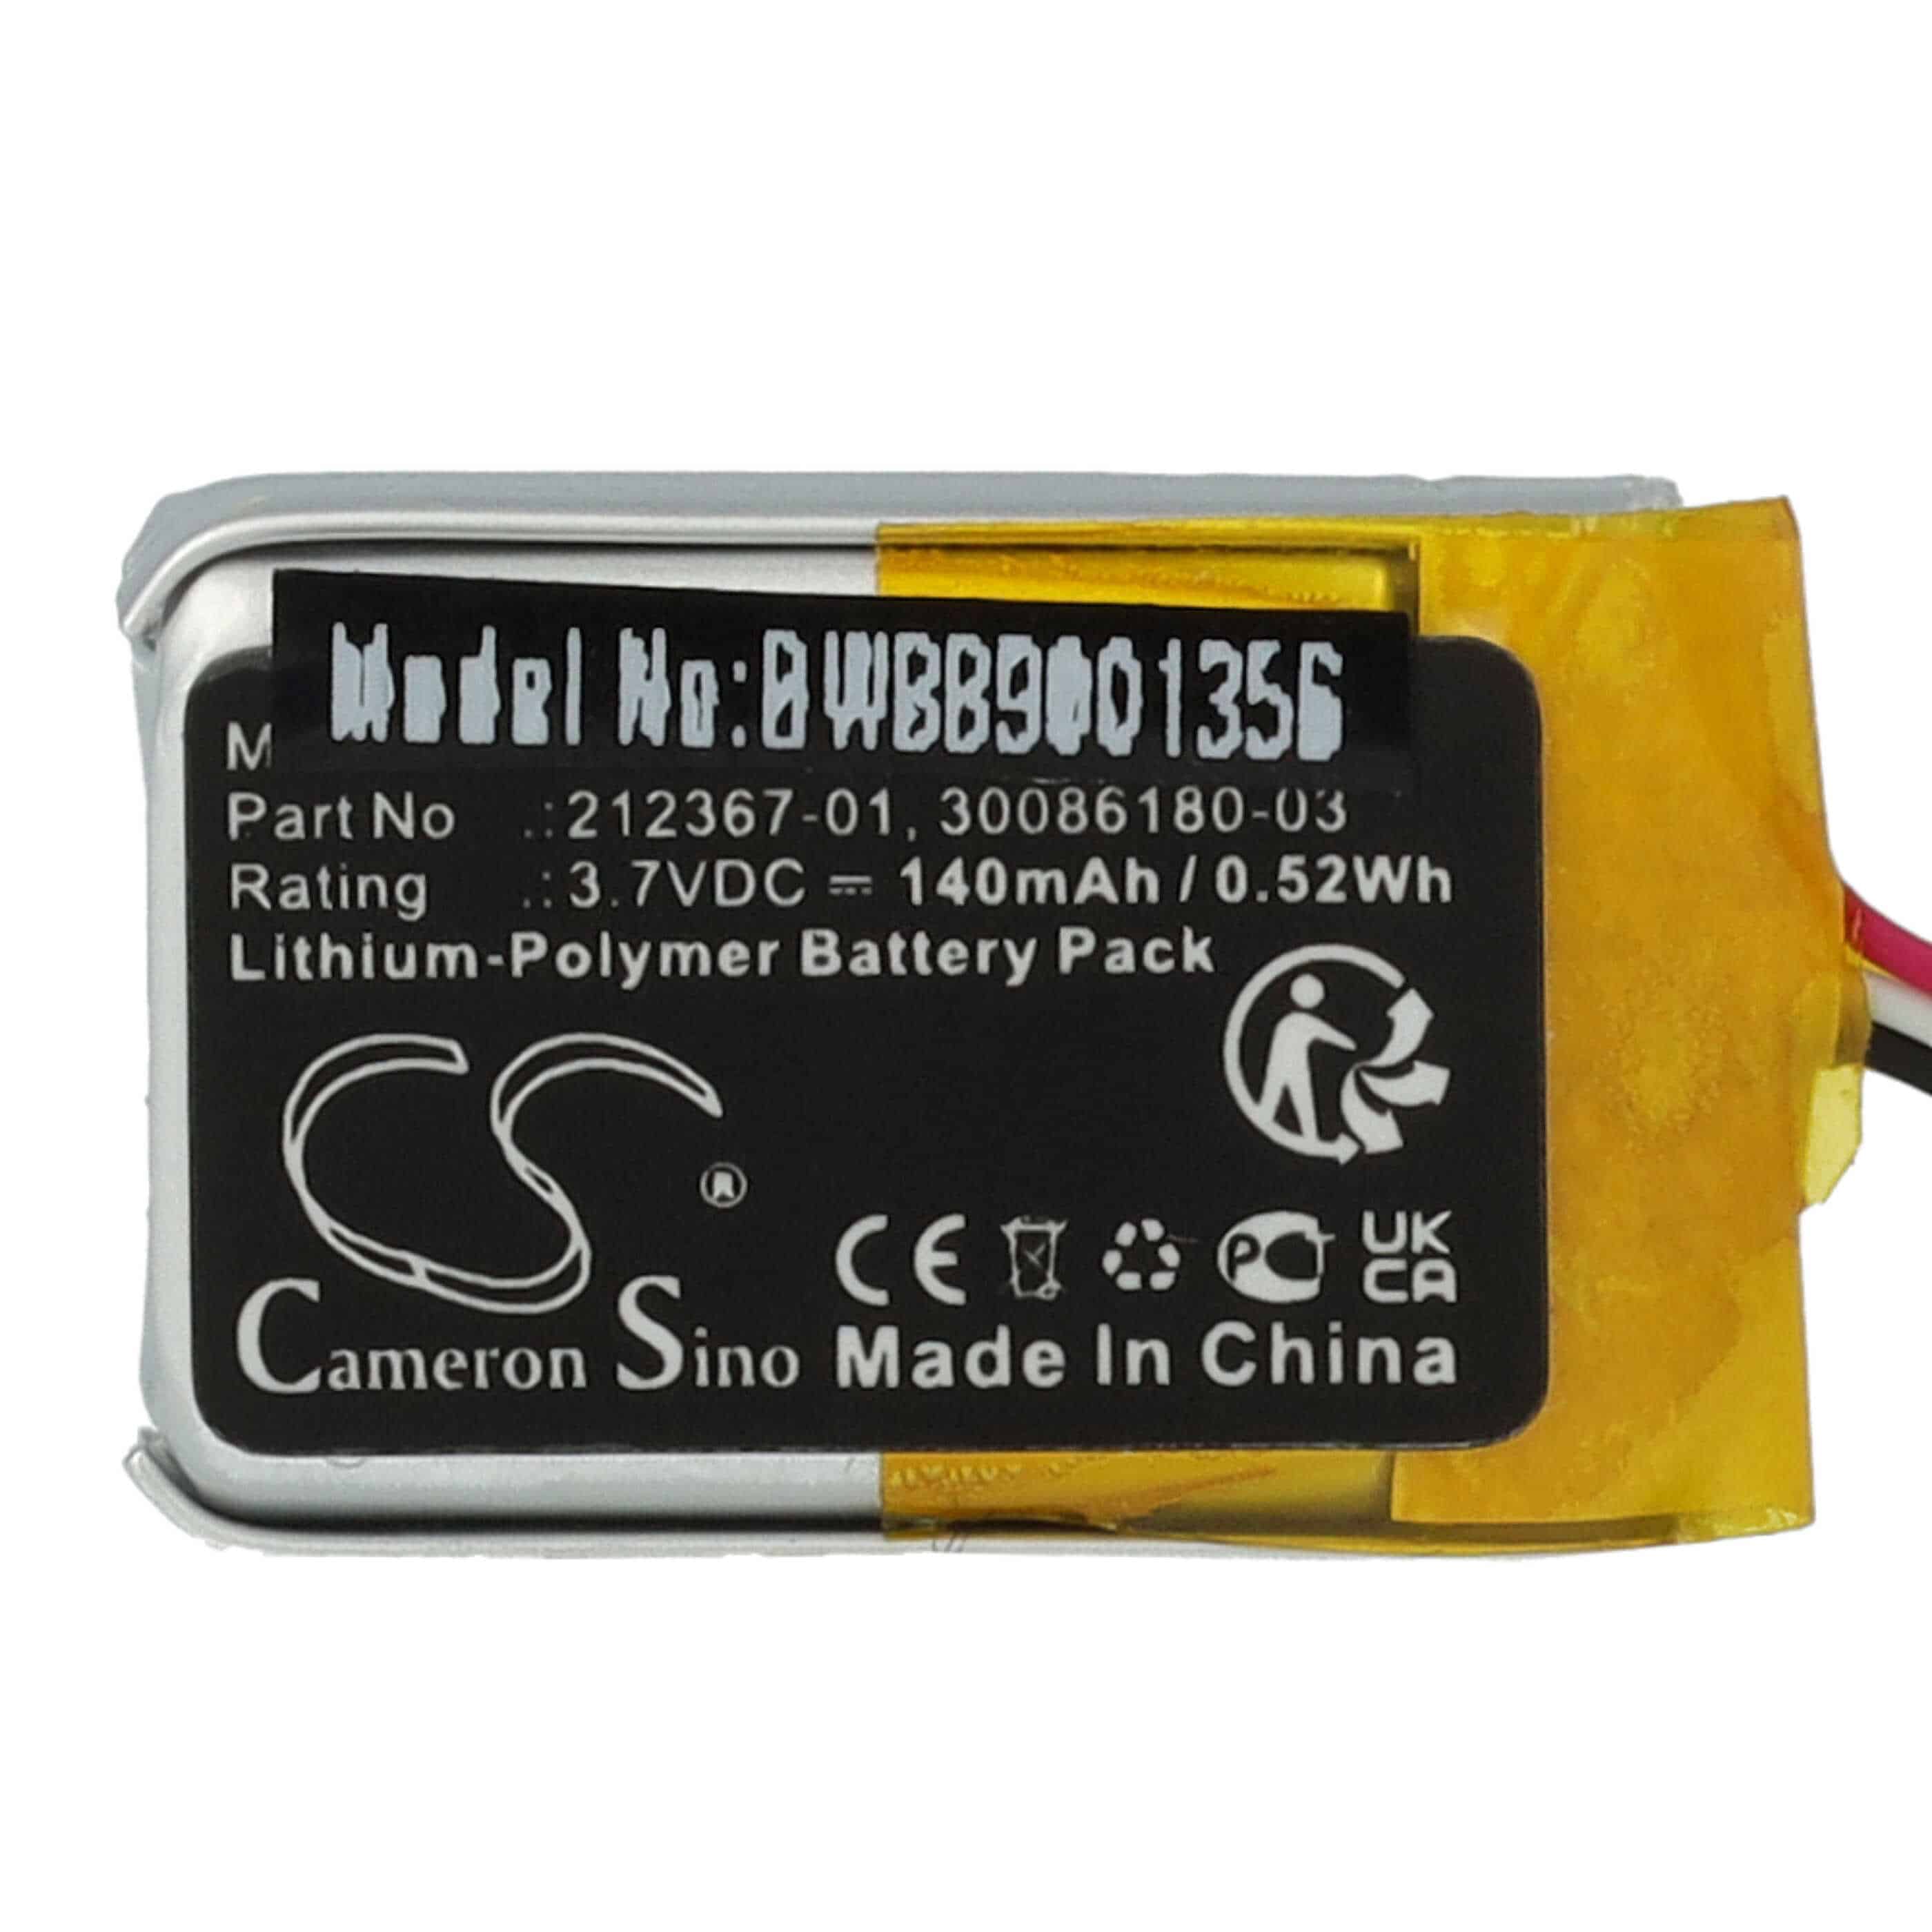 Batterie remplace Plantronics 212367-01 (3 pin), 212367-01 pour casque audio - 140mAh 3,7V Li-polymère